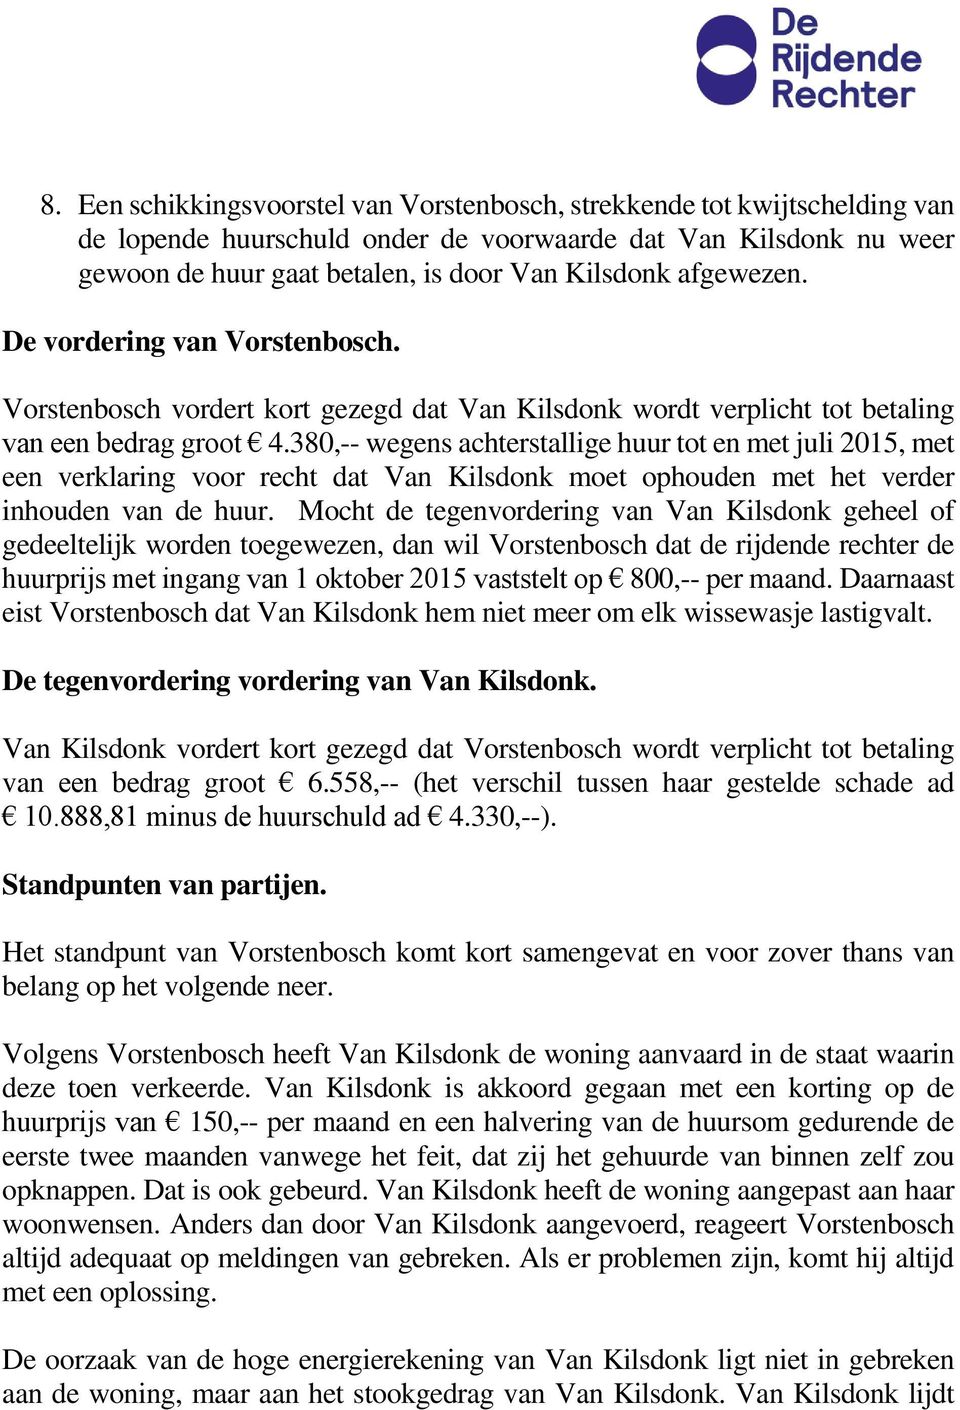 380,-- wegens achterstallige huur tot en met juli 2015, met een verklaring voor recht dat Van Kilsdonk moet ophouden met het verder inhouden van de huur.